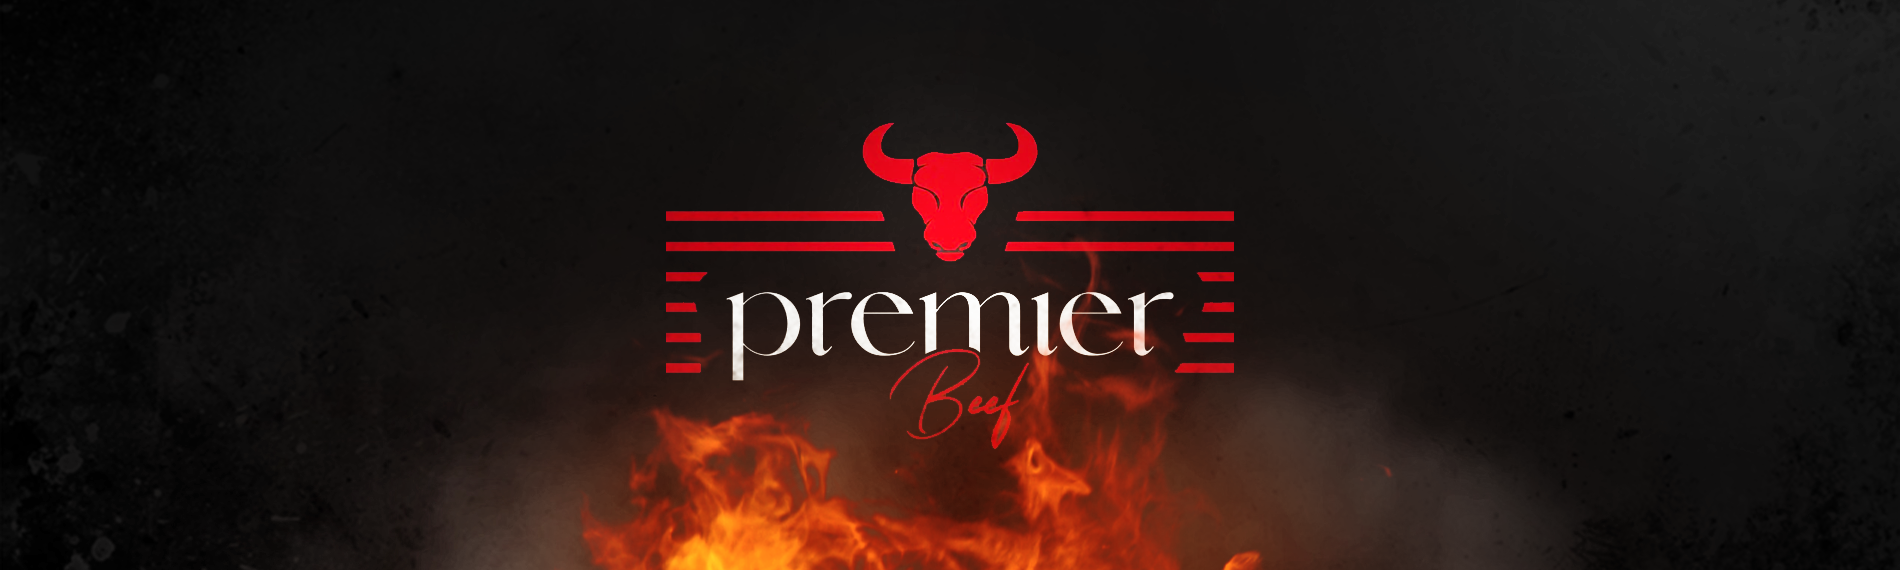 banner da empresa Premier Beef